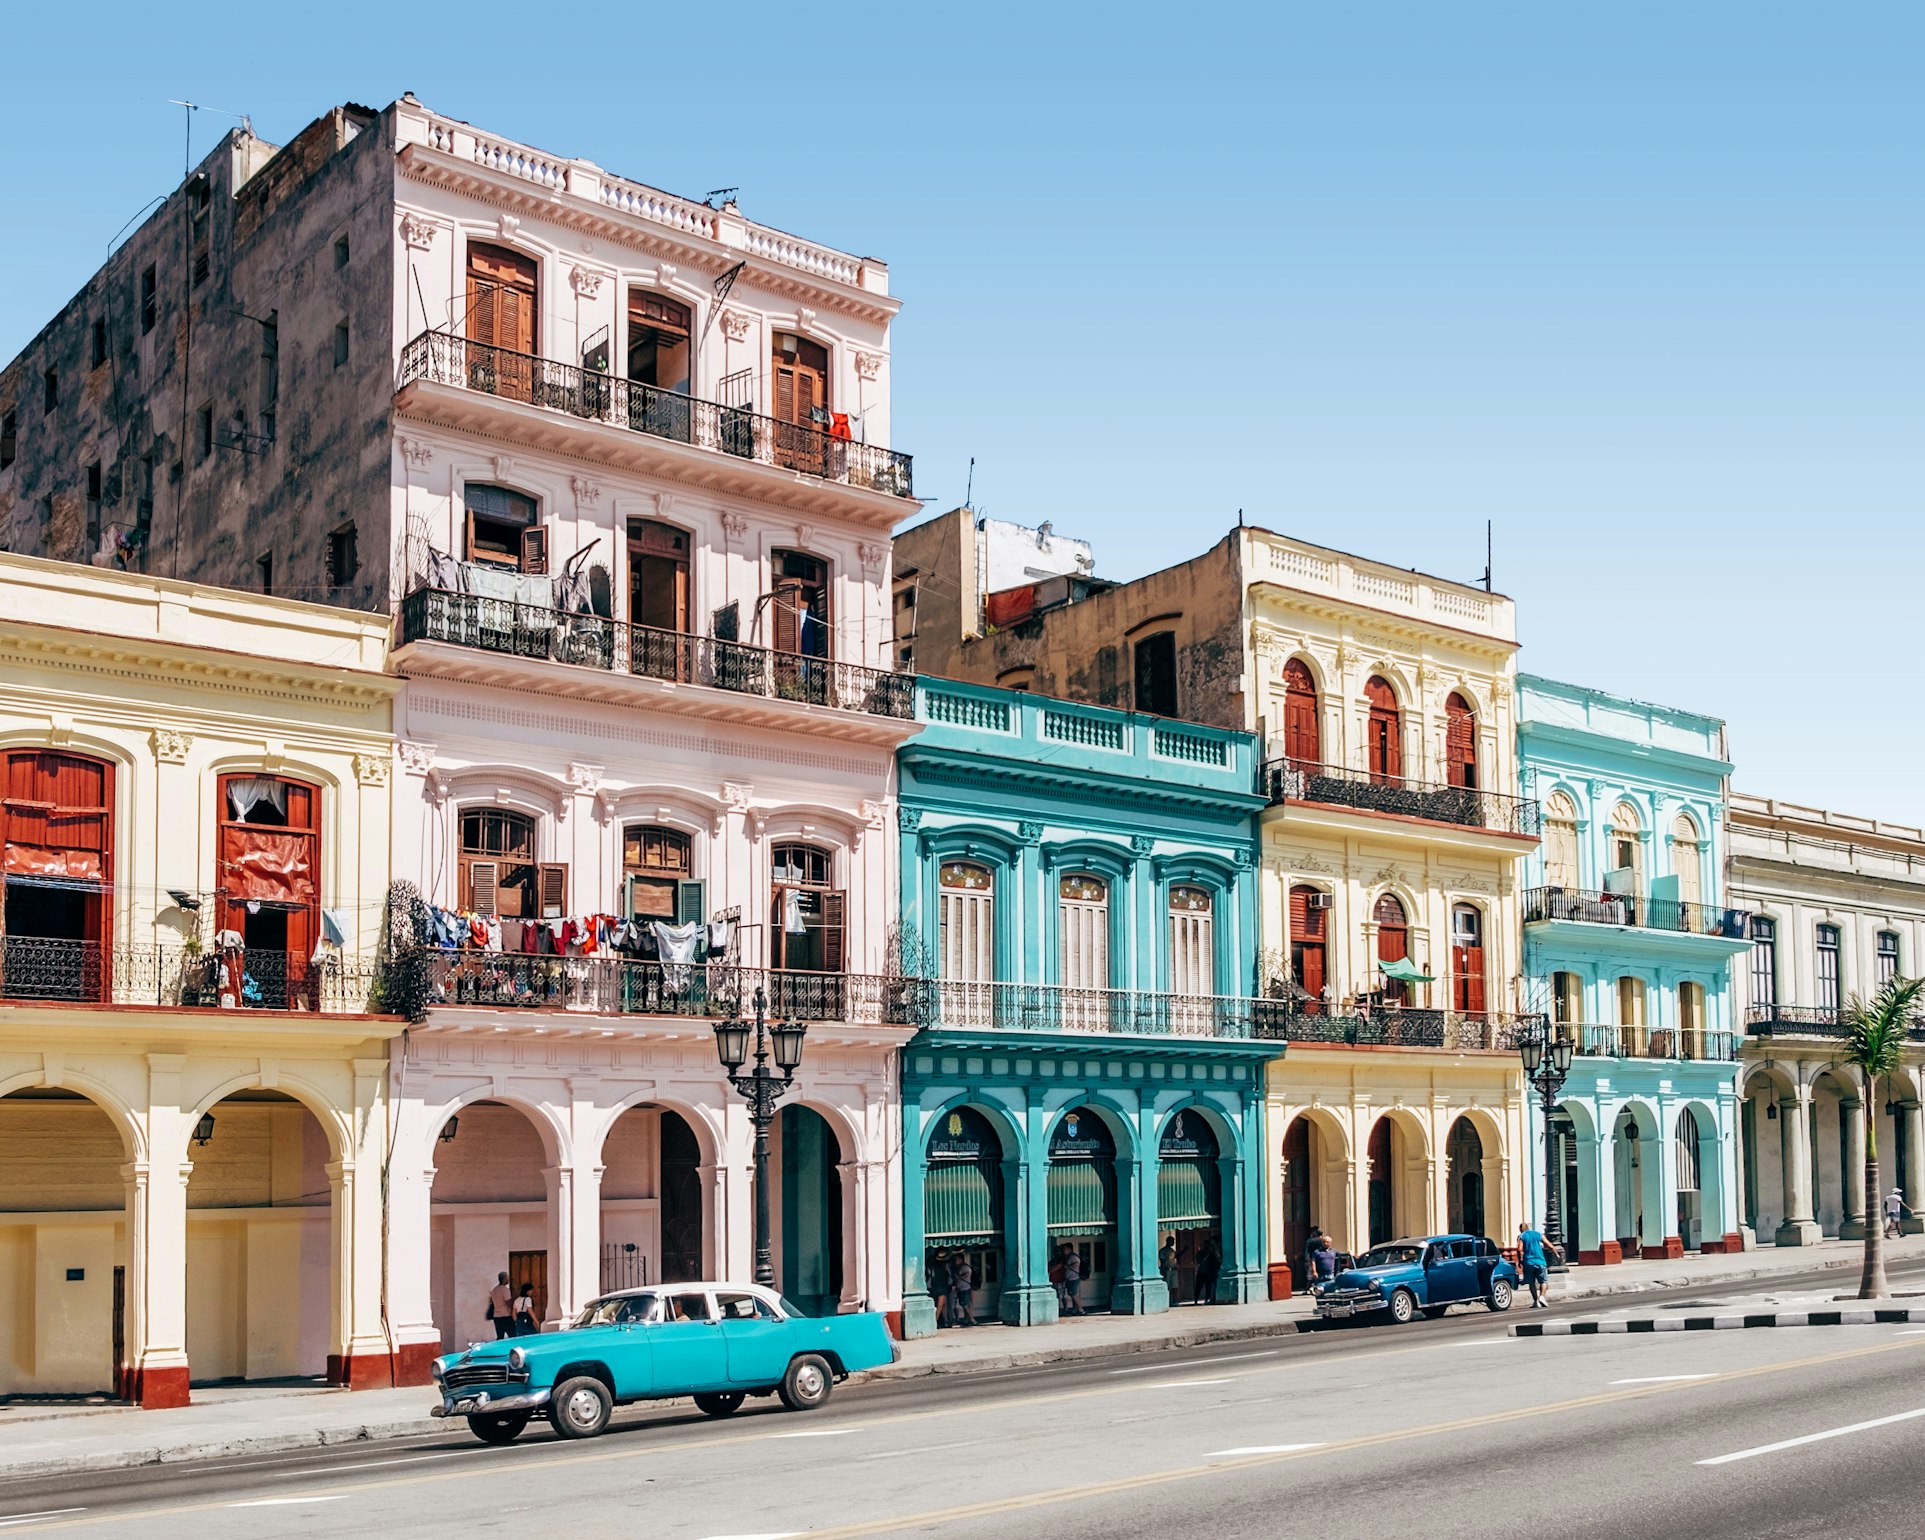 Le case colorate di Cuba e delle auto soriche